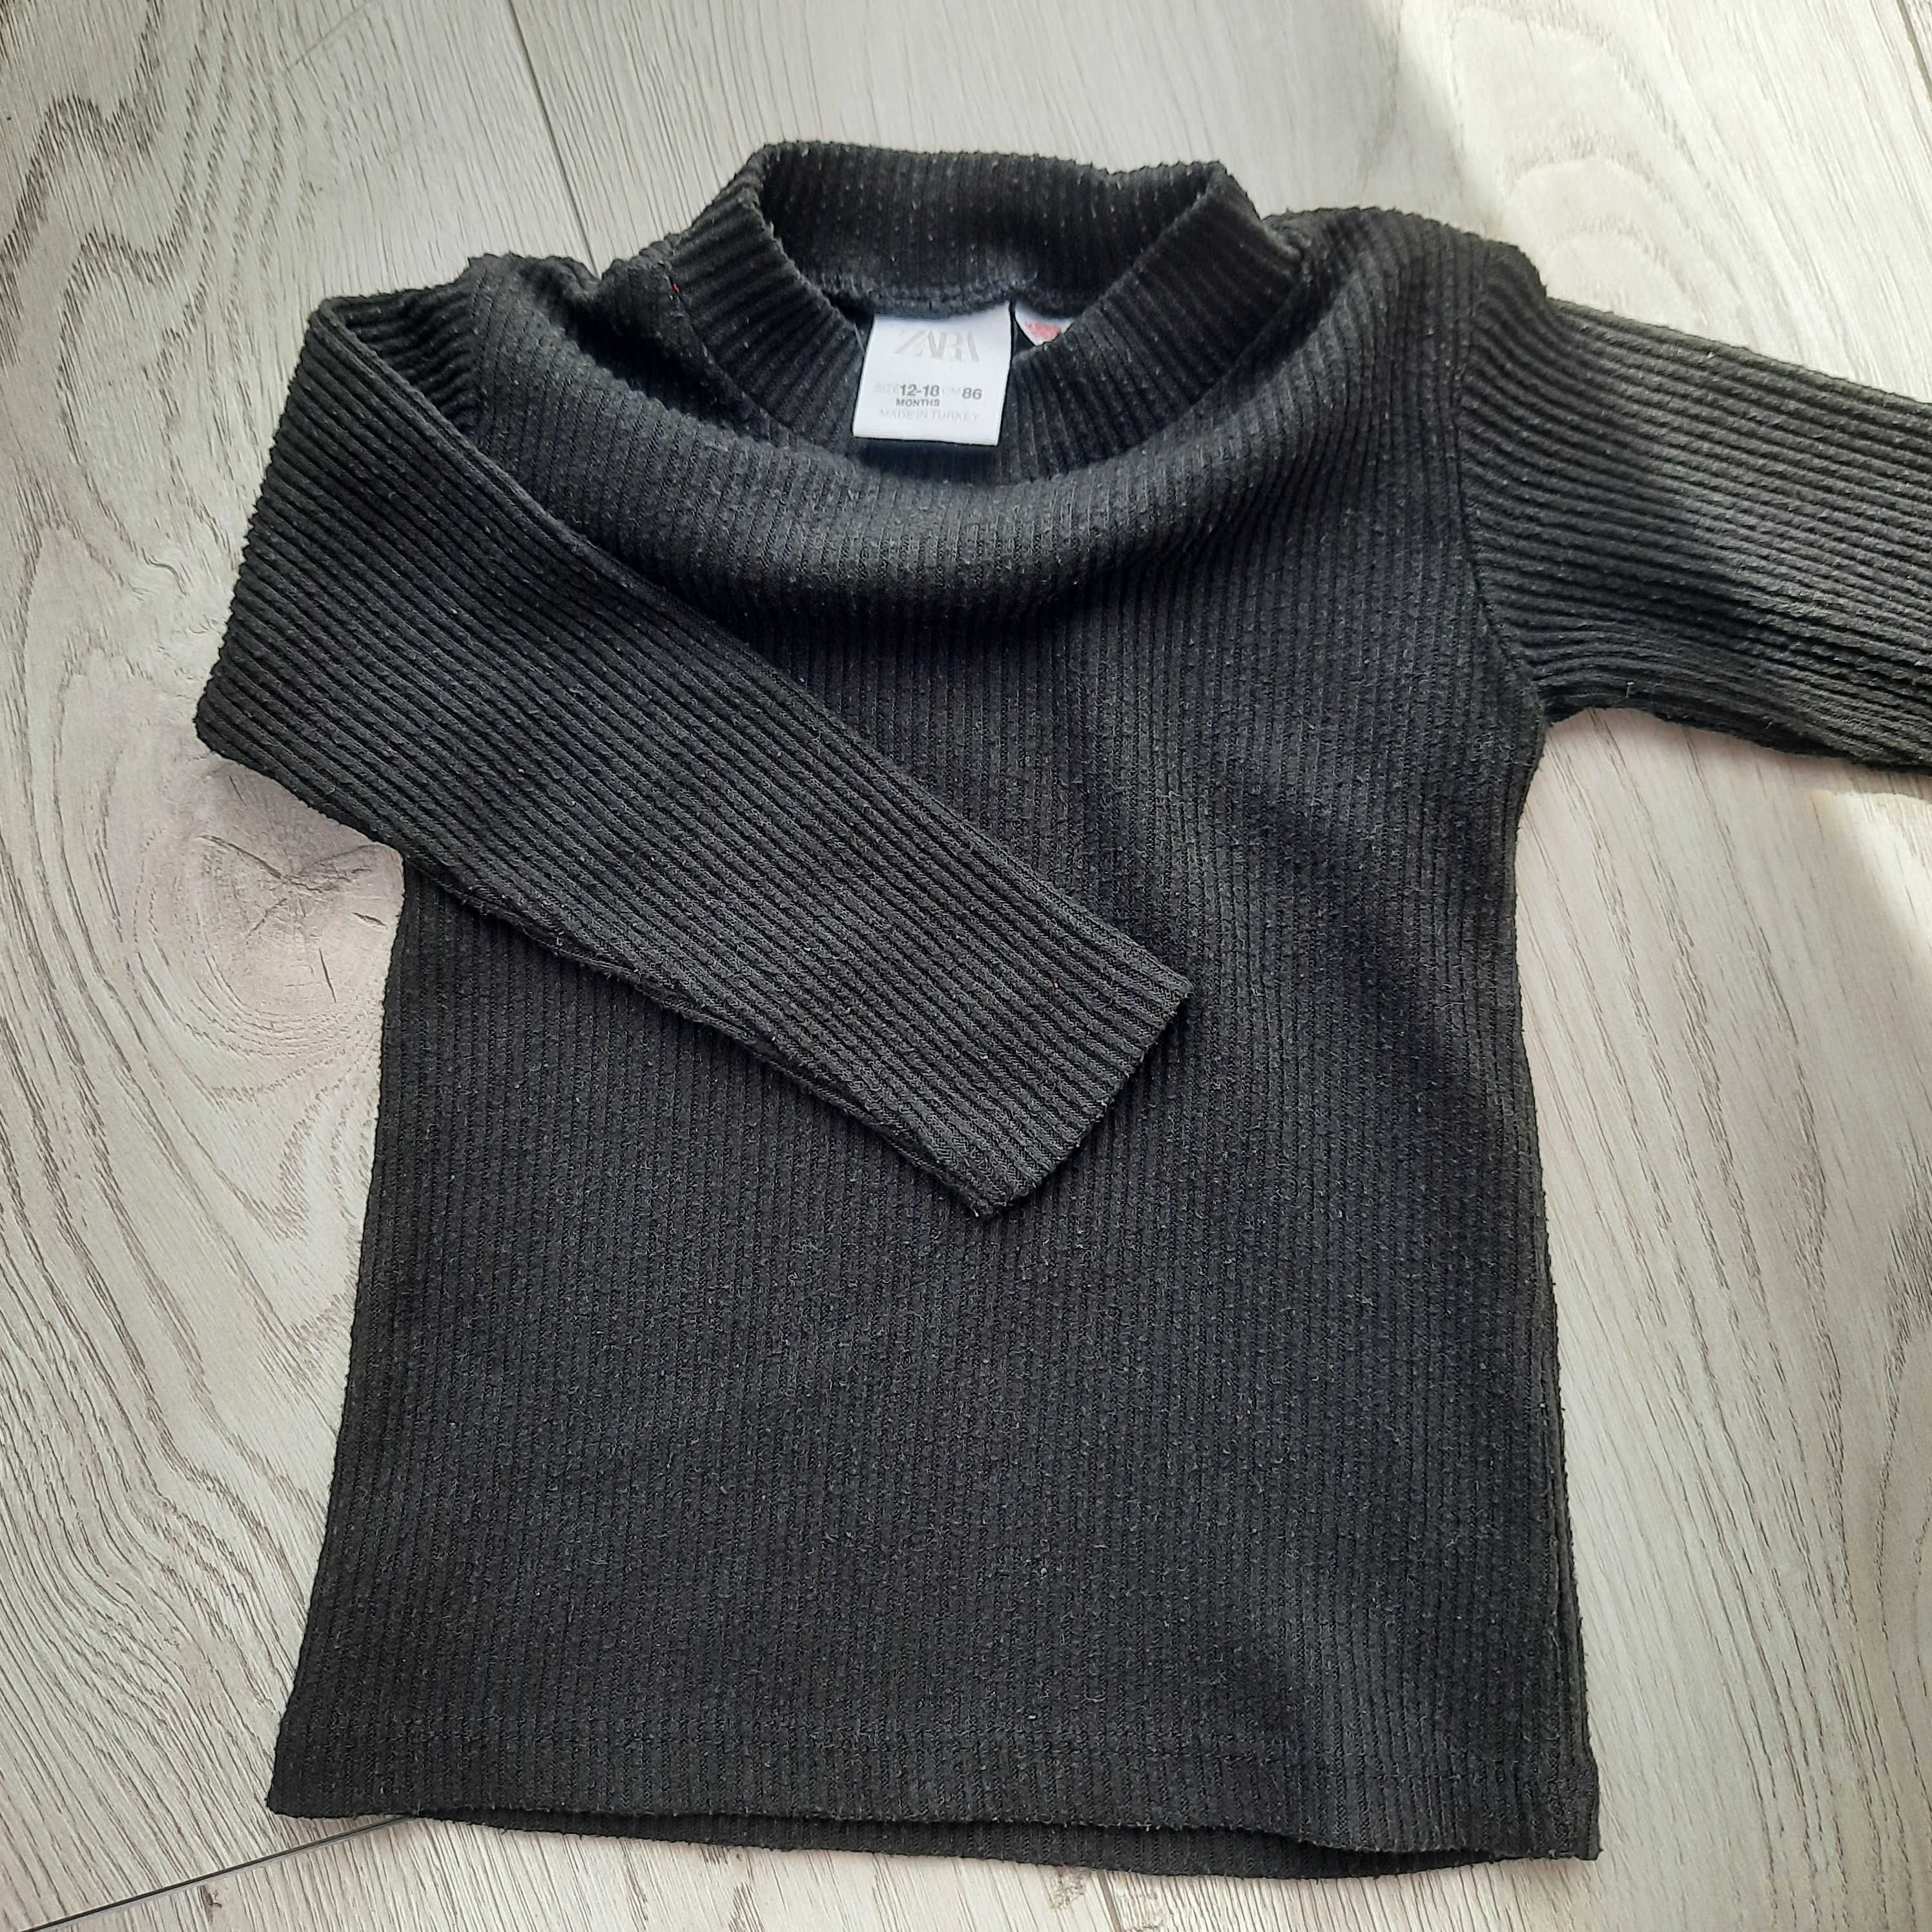 Sweterki Zara 86 Dziewczynka